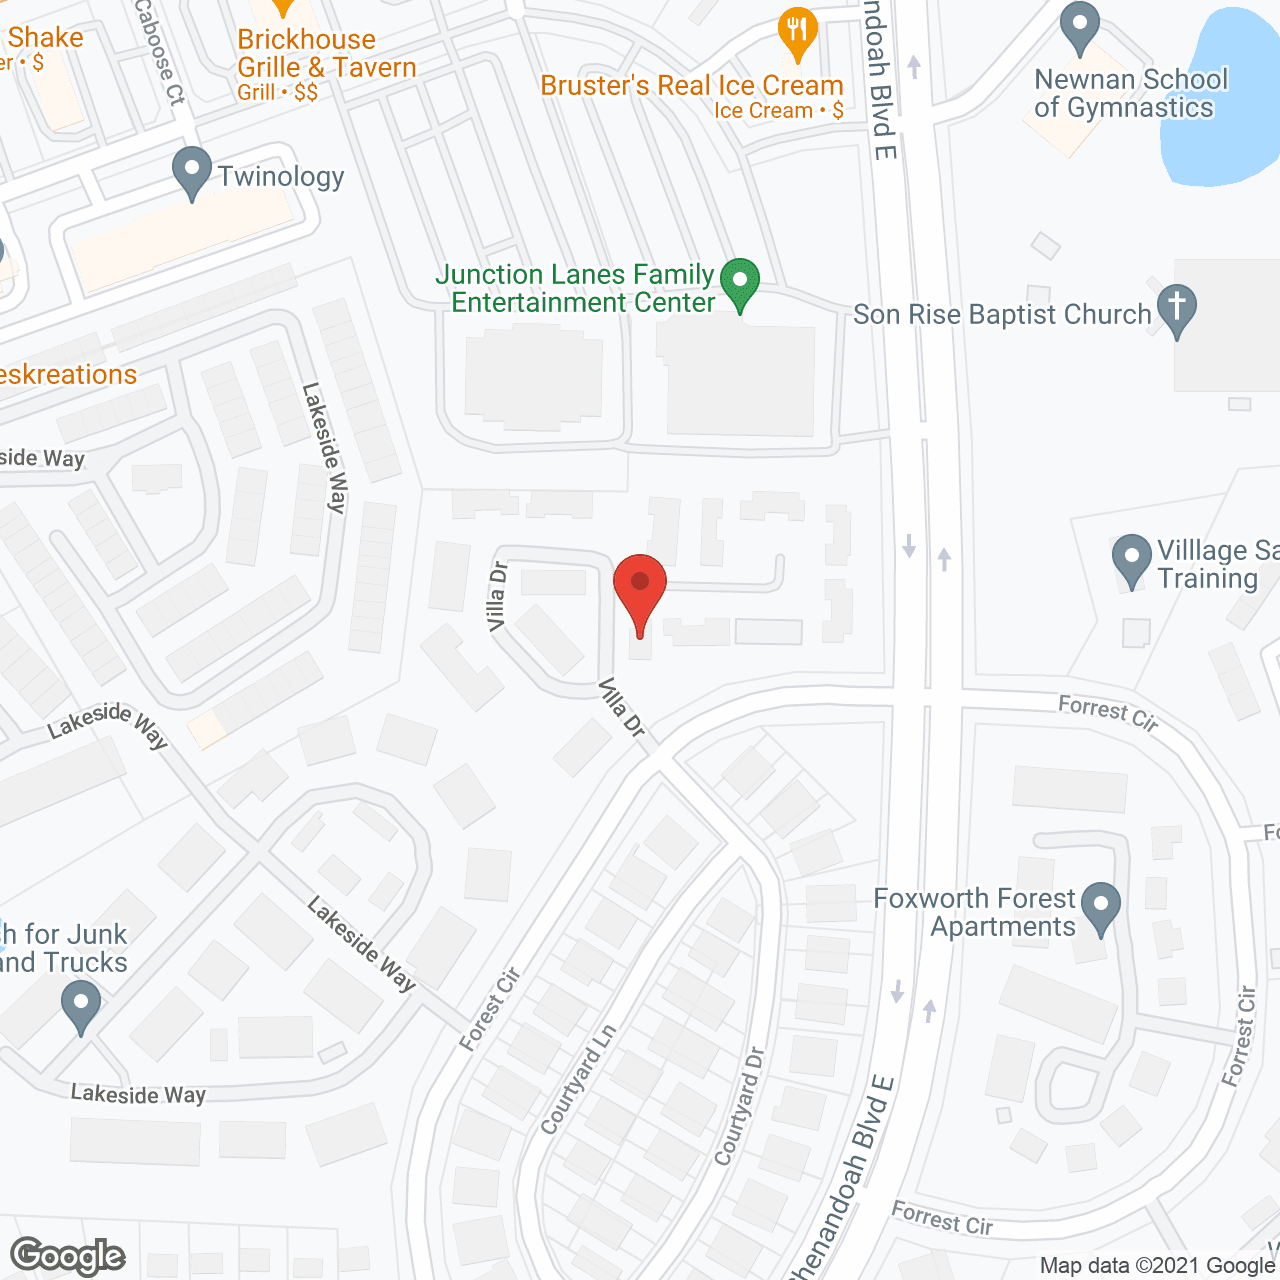 Shenandoah Villas in google map